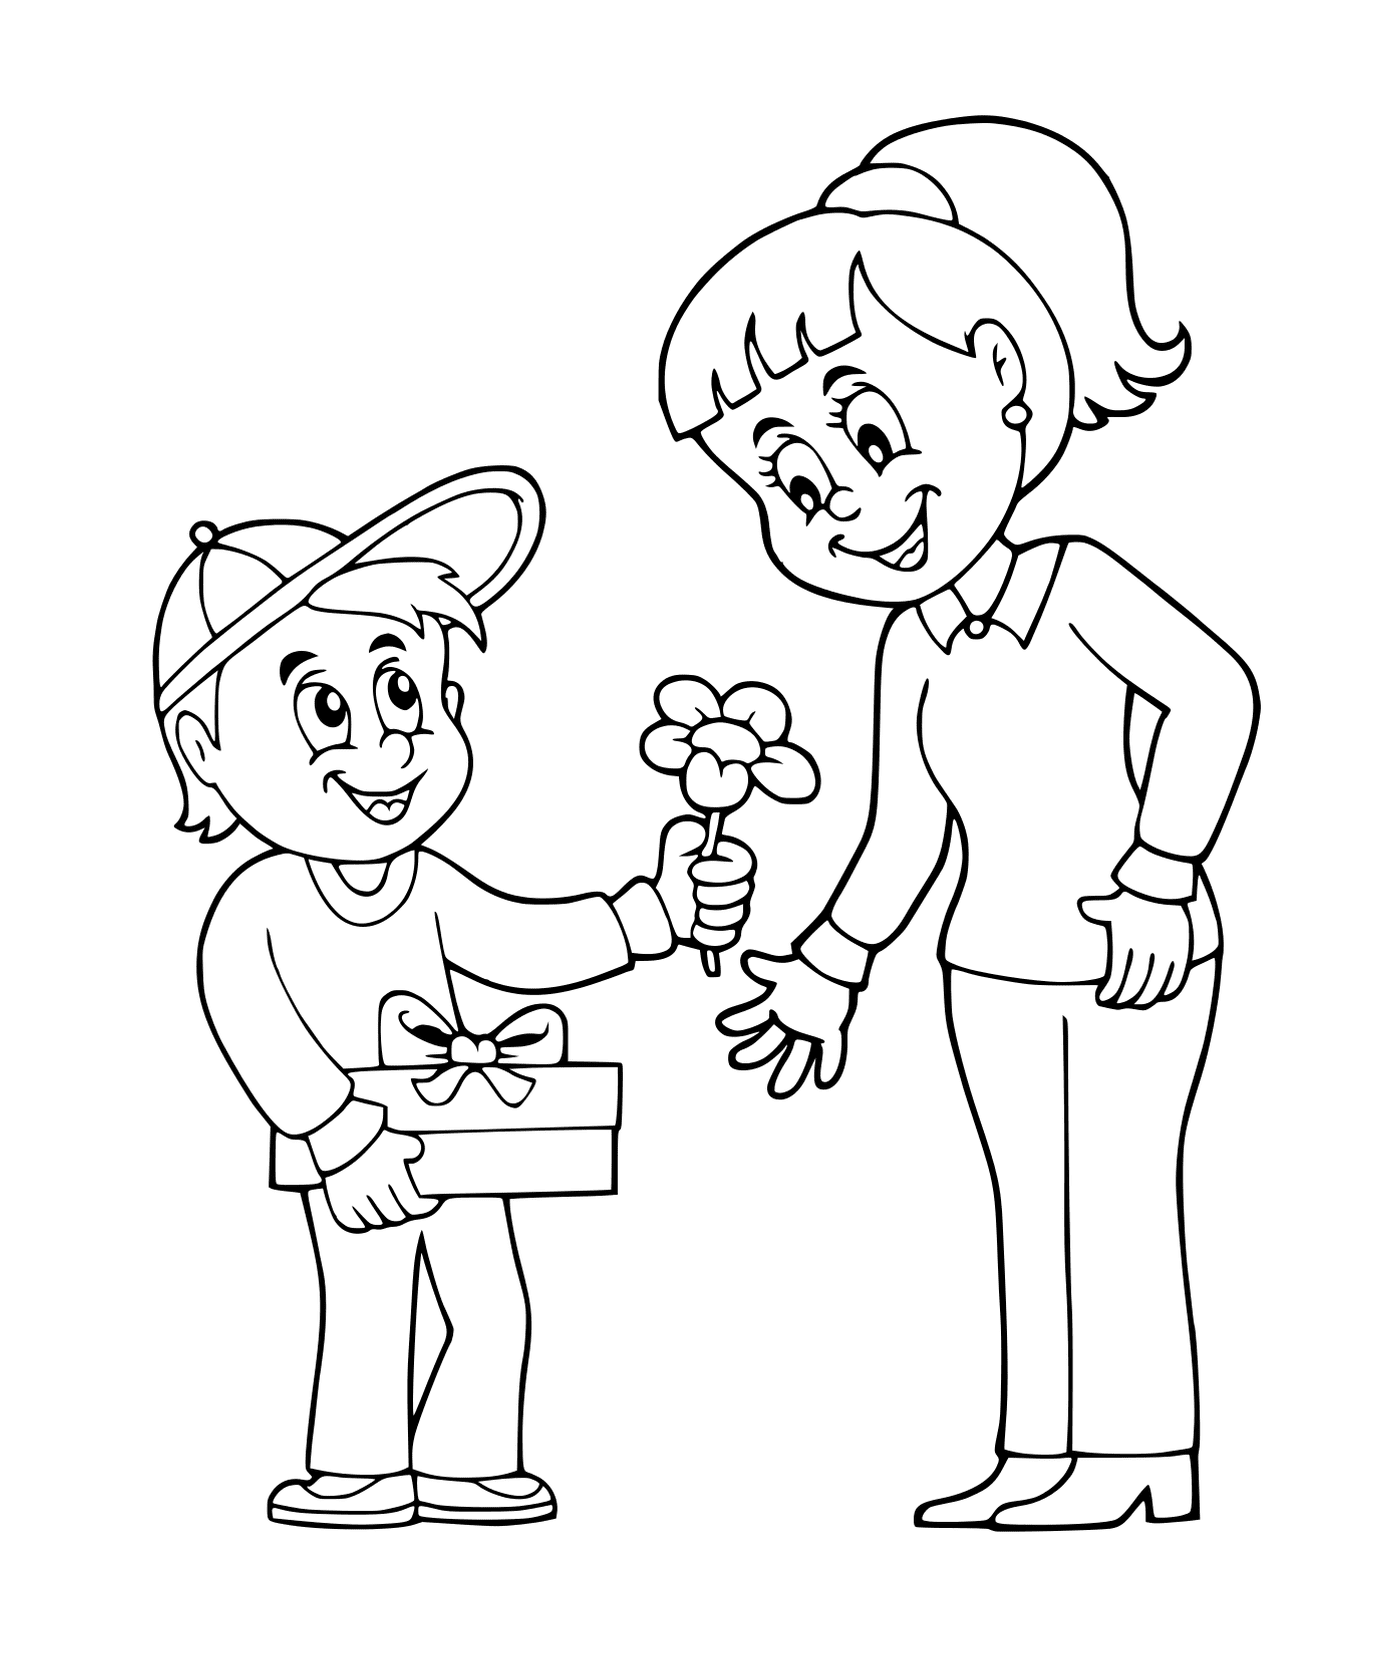  Un chico ofreciendo flores a una chica 